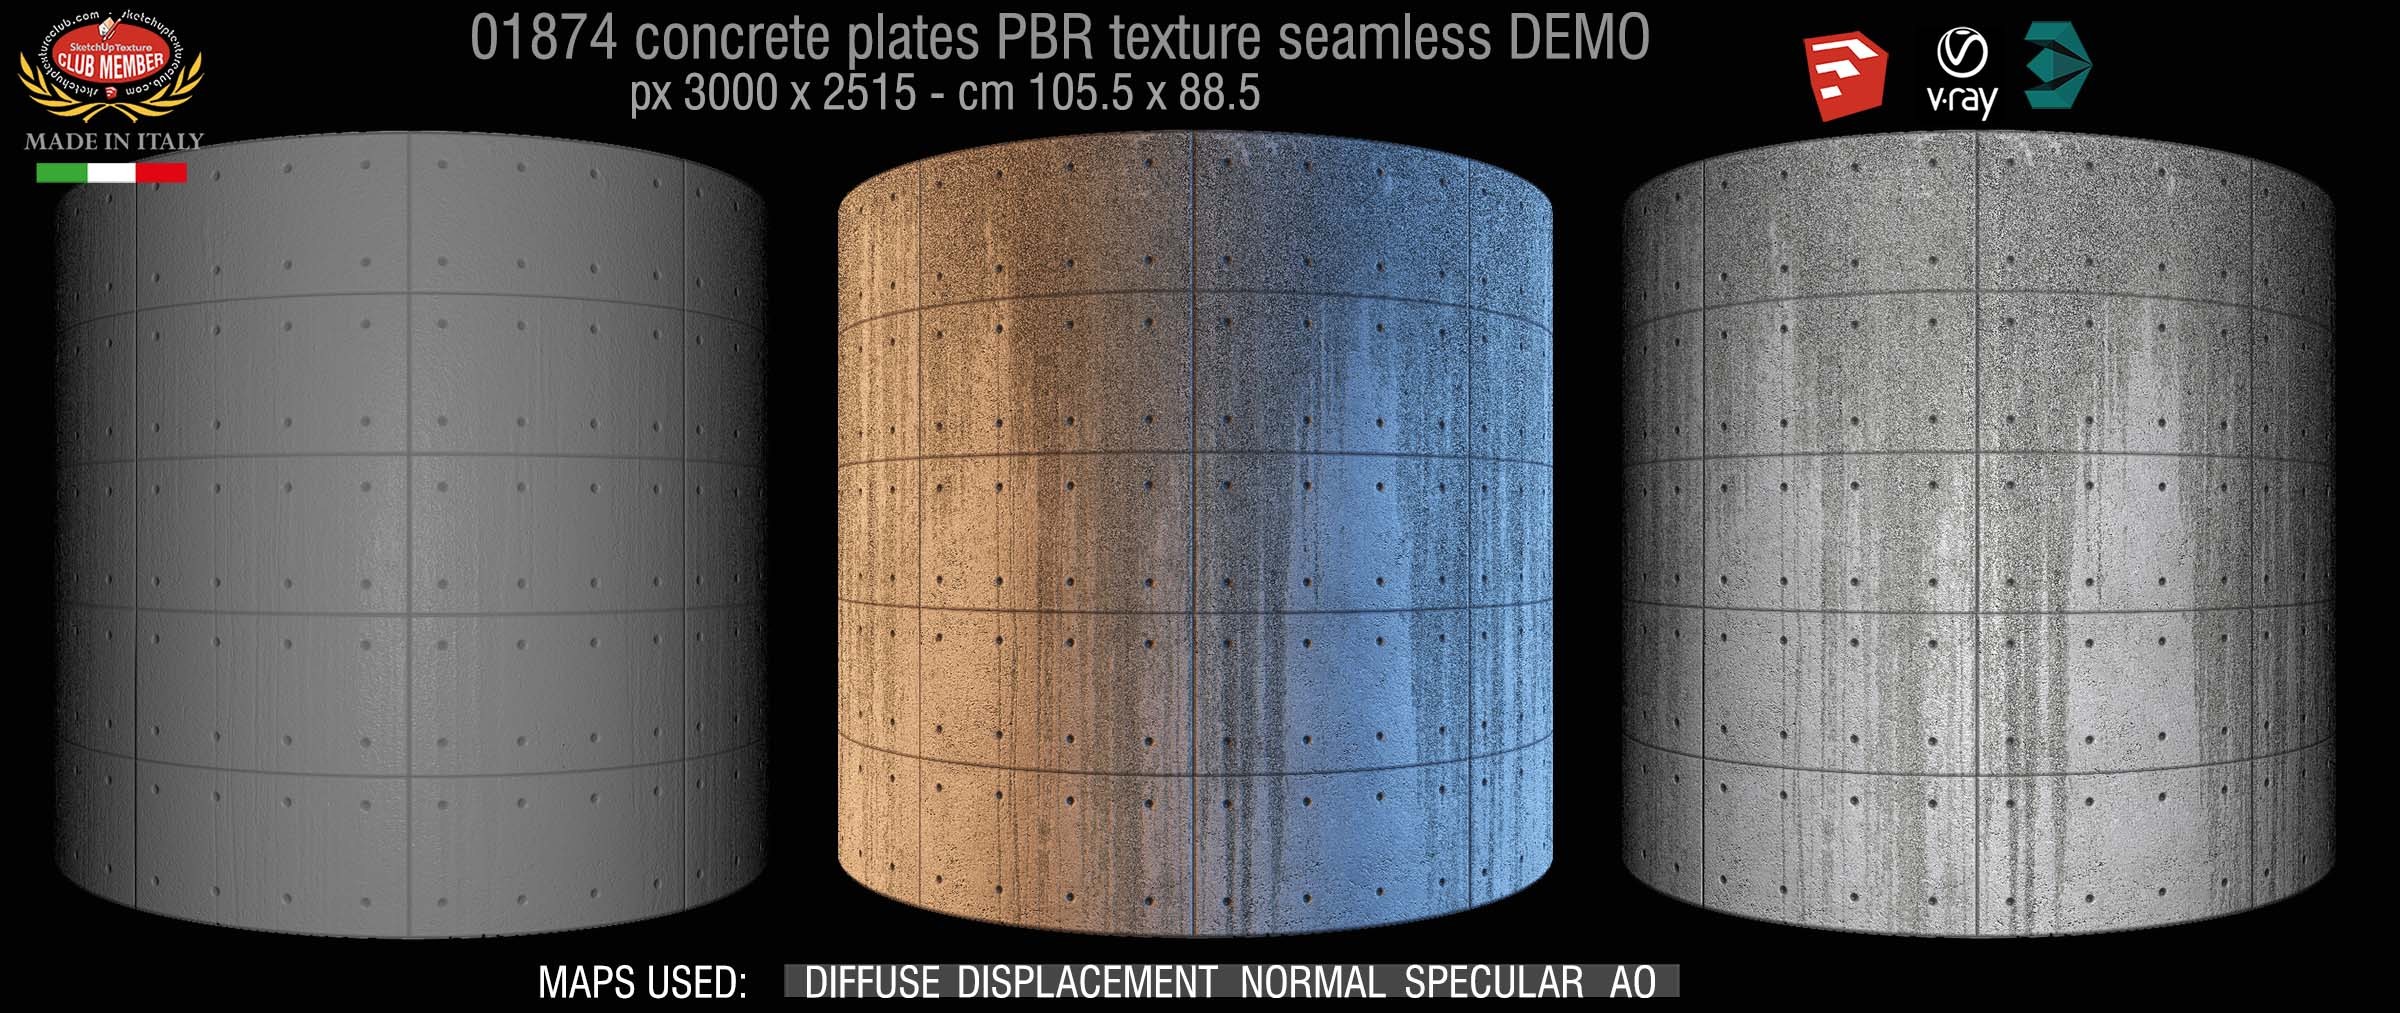 01874 Tadao Ando concrete plates PBR texture seamless DEMO